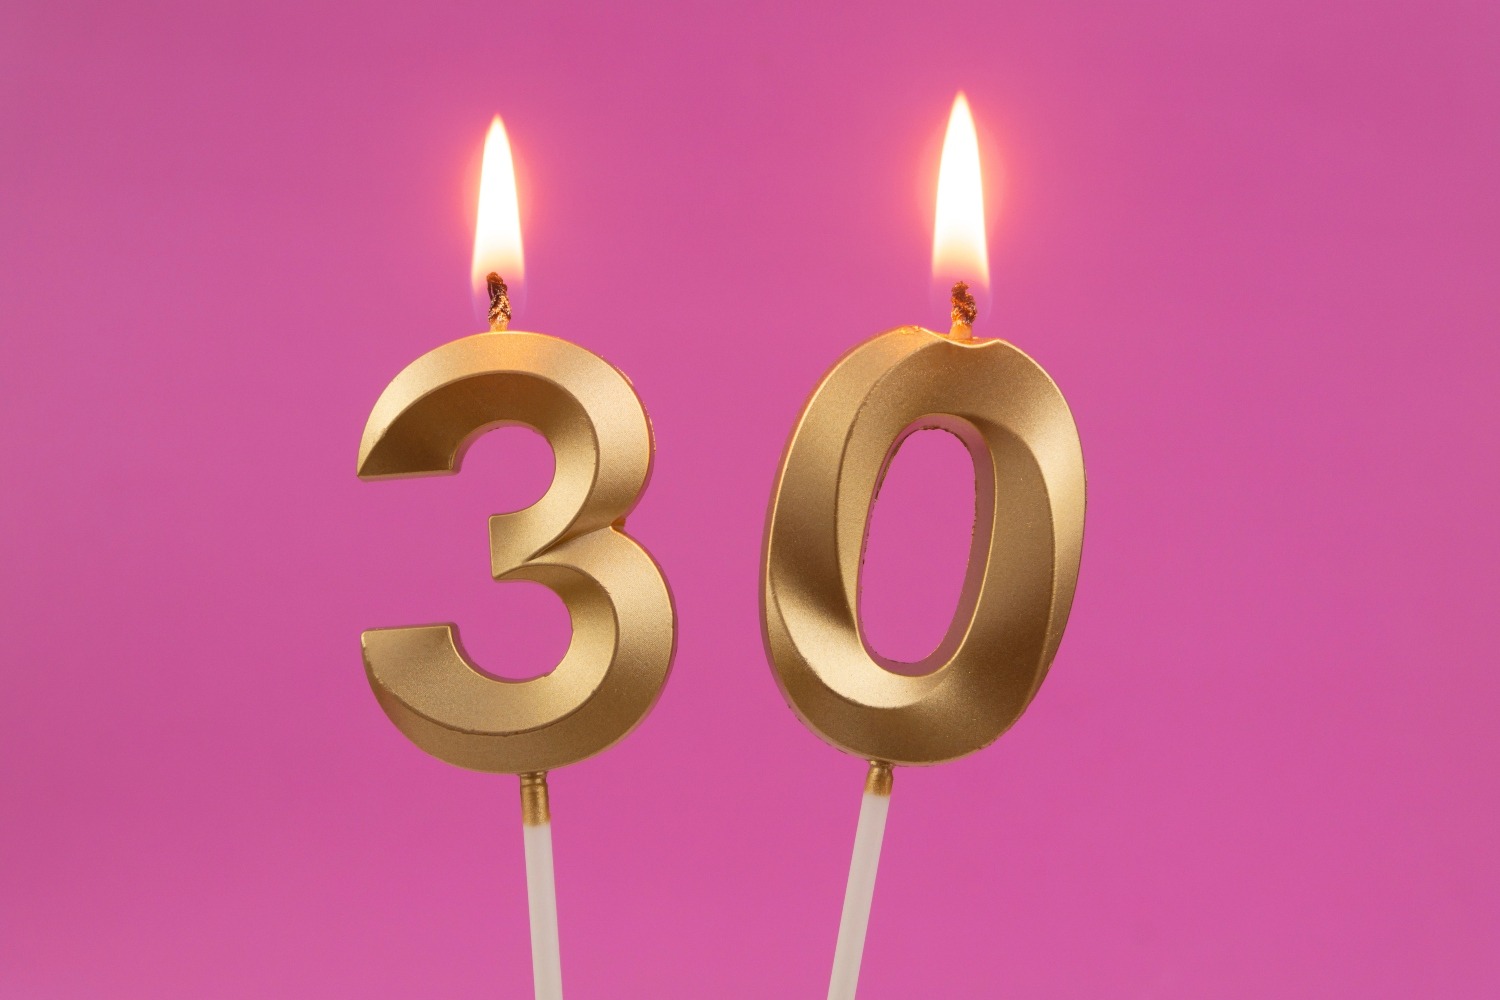 30 ans Bon anniversaire – Message original et texte court bonne fête   Citation anniversaire, Message anniversaire 30 ans, Carte anniversaire 30  ans